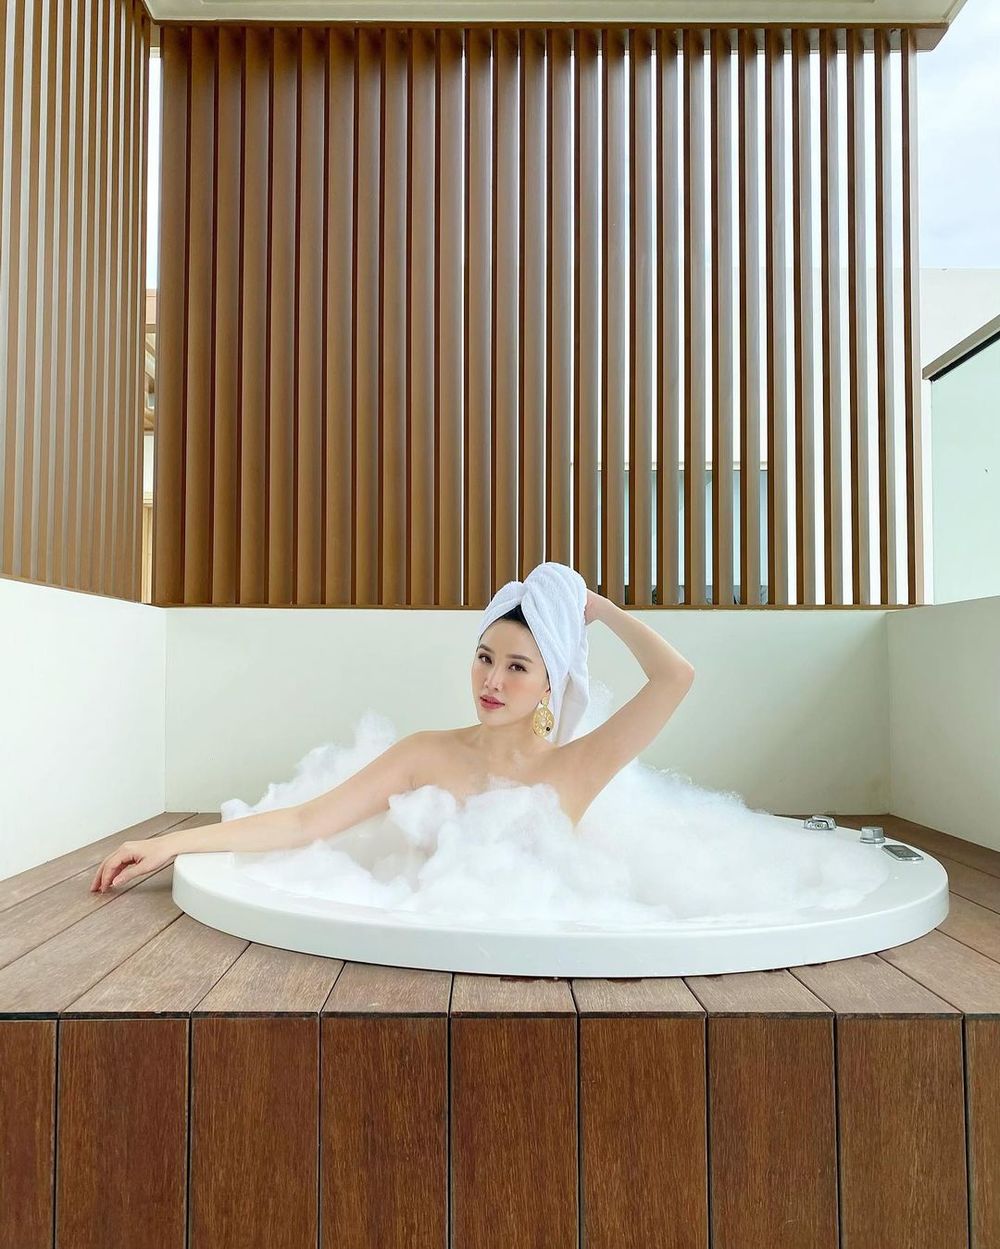  
Bảo Thy thư giãn trong bồn tắm, cô makeup nhẹ nhàng để có ảnh "sống ảo". (Ảnh: Instagram nhân vật)